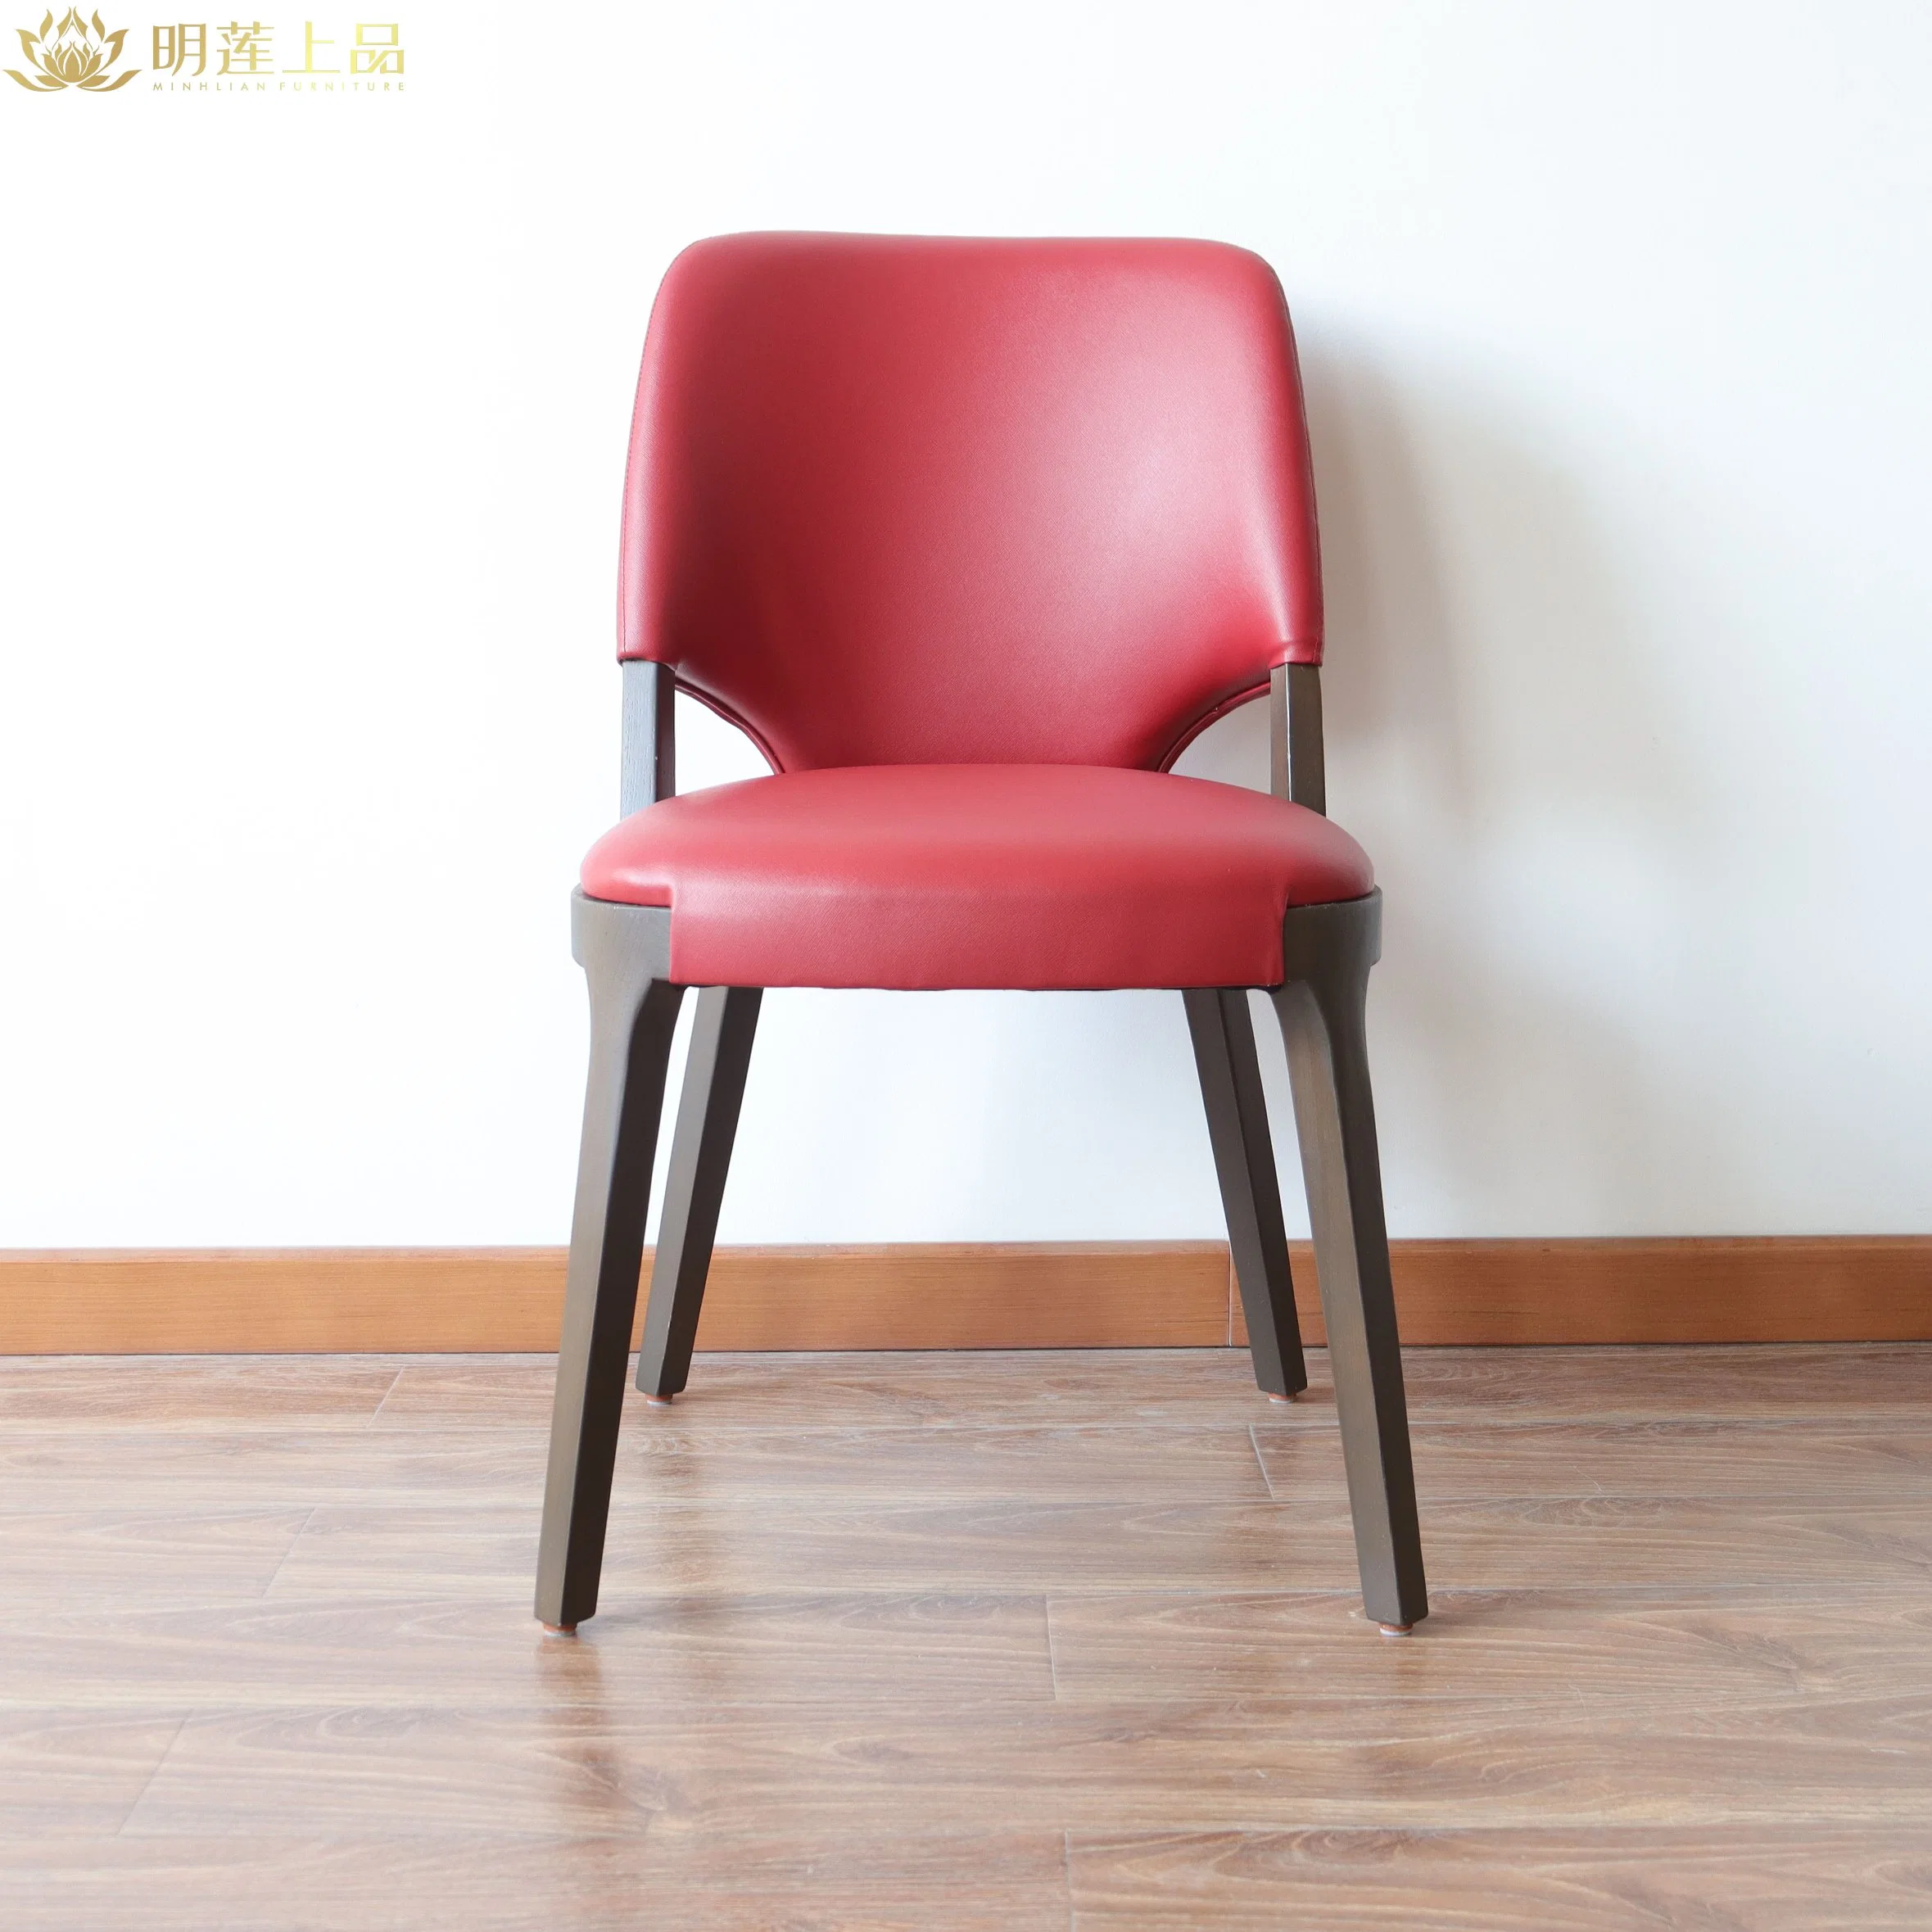 Moderno diseño Red PU cuero tapizado Restaurante silla comedor Mobiliario Mobiliario Mobiliario para el hogar silla de madera sólida